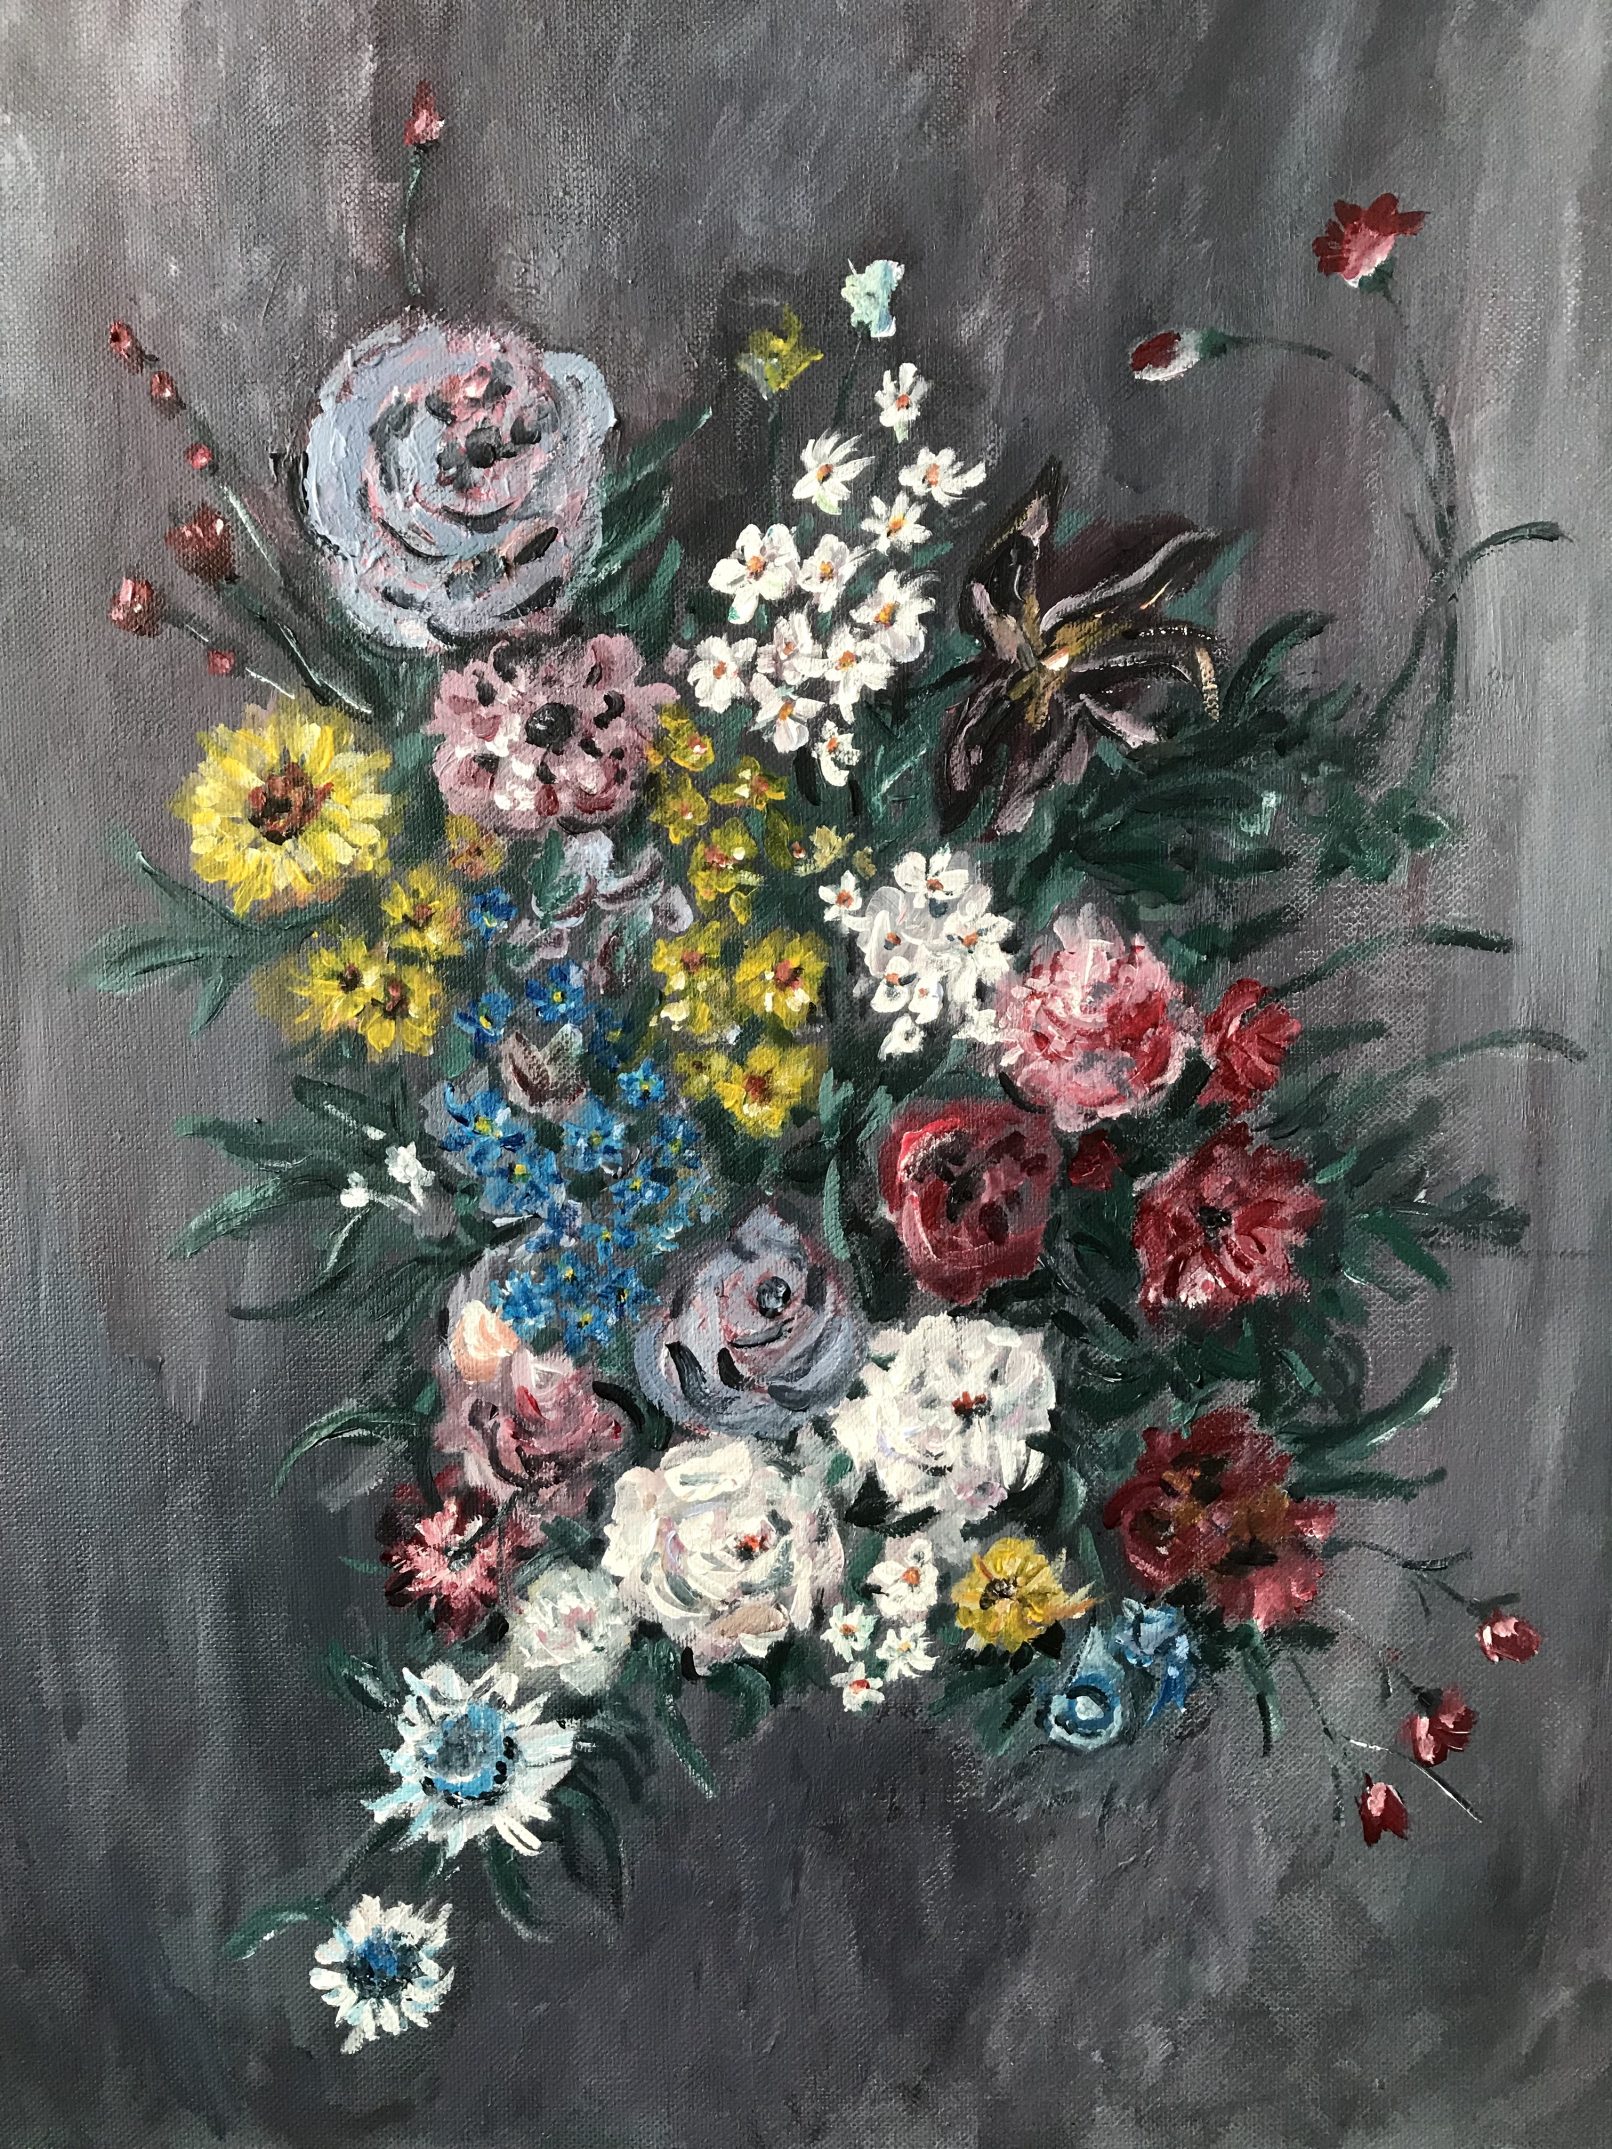 Saskia Stapel painting flowers